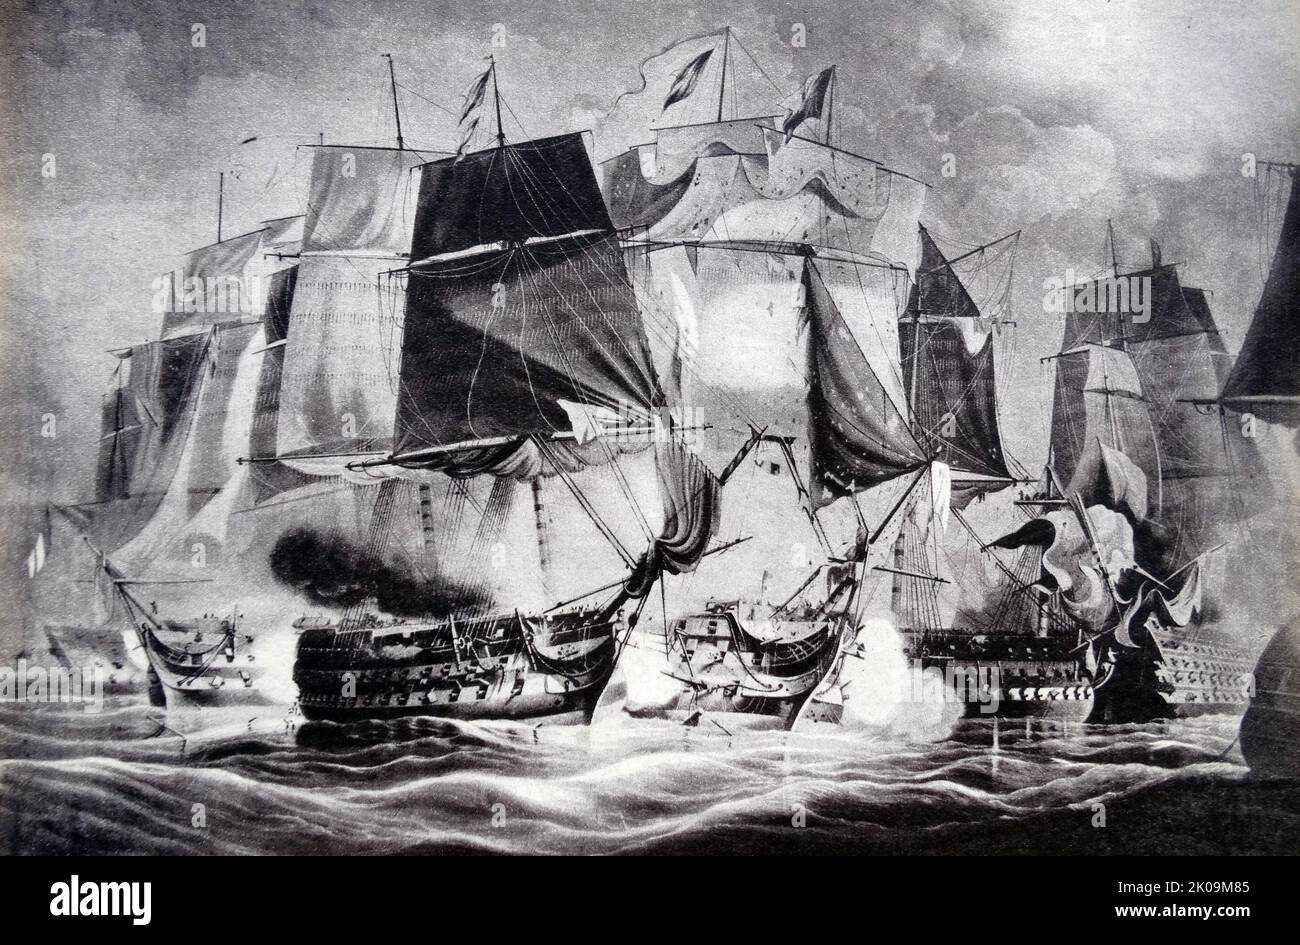 La bataille de Trafalgar (21 octobre 1805) fut un engagement naval entre la Royal Navy britannique et les flottes combinées des marines française et espagnole pendant la guerre de la troisième Coalition (août-décembre 1805) des guerres napoléoniennes (1803-1815). Banque D'Images